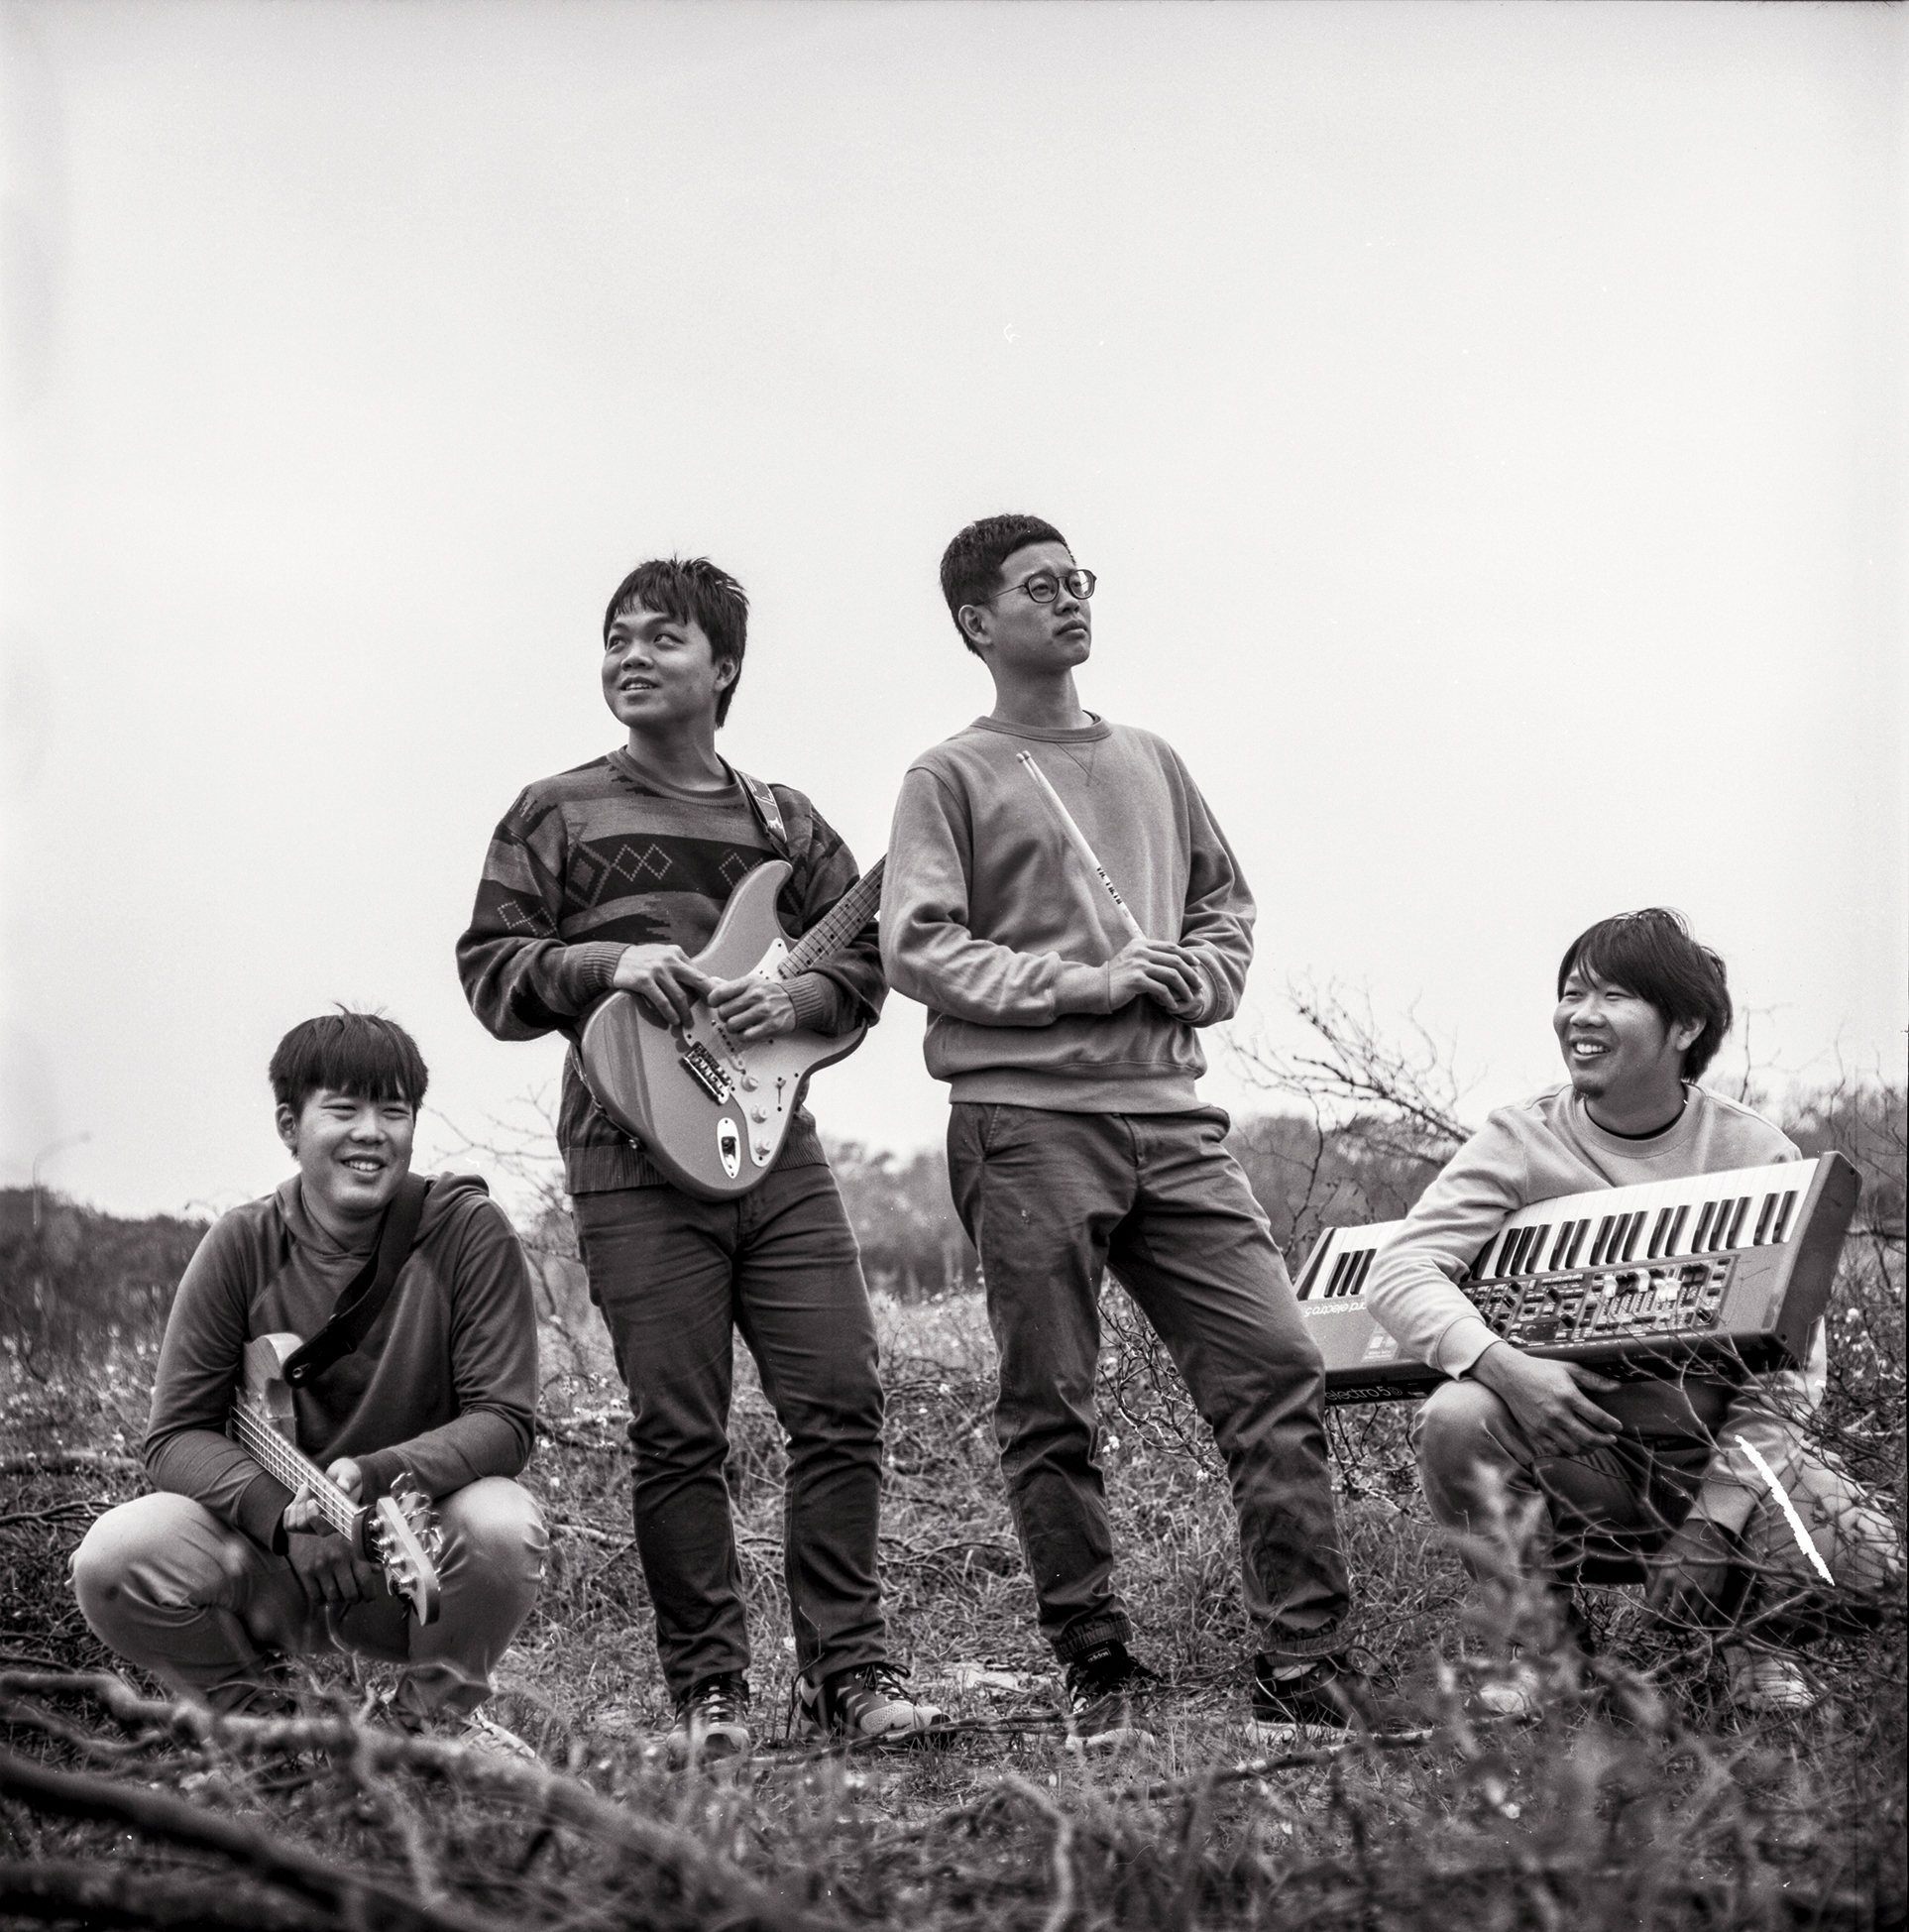 故郷に青春の種をまく 台青蕉楽団 - Taiwan Panorama